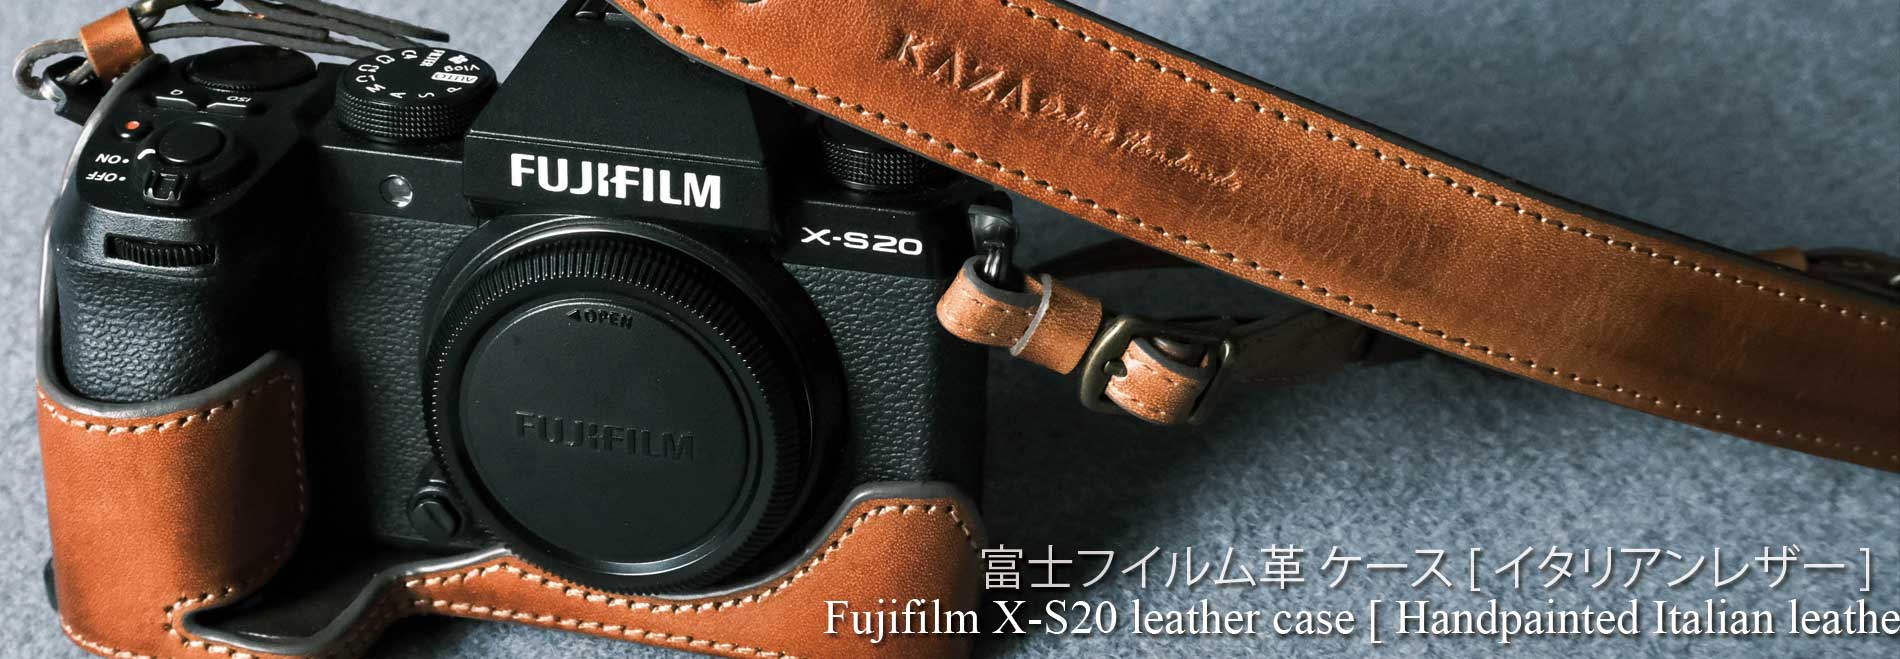 Fujifilm X-S20用カメラケース, Fujifilm X-S20相機皮套, Fujifilm X-S20 leather case, Fujifilm X-S20 half case